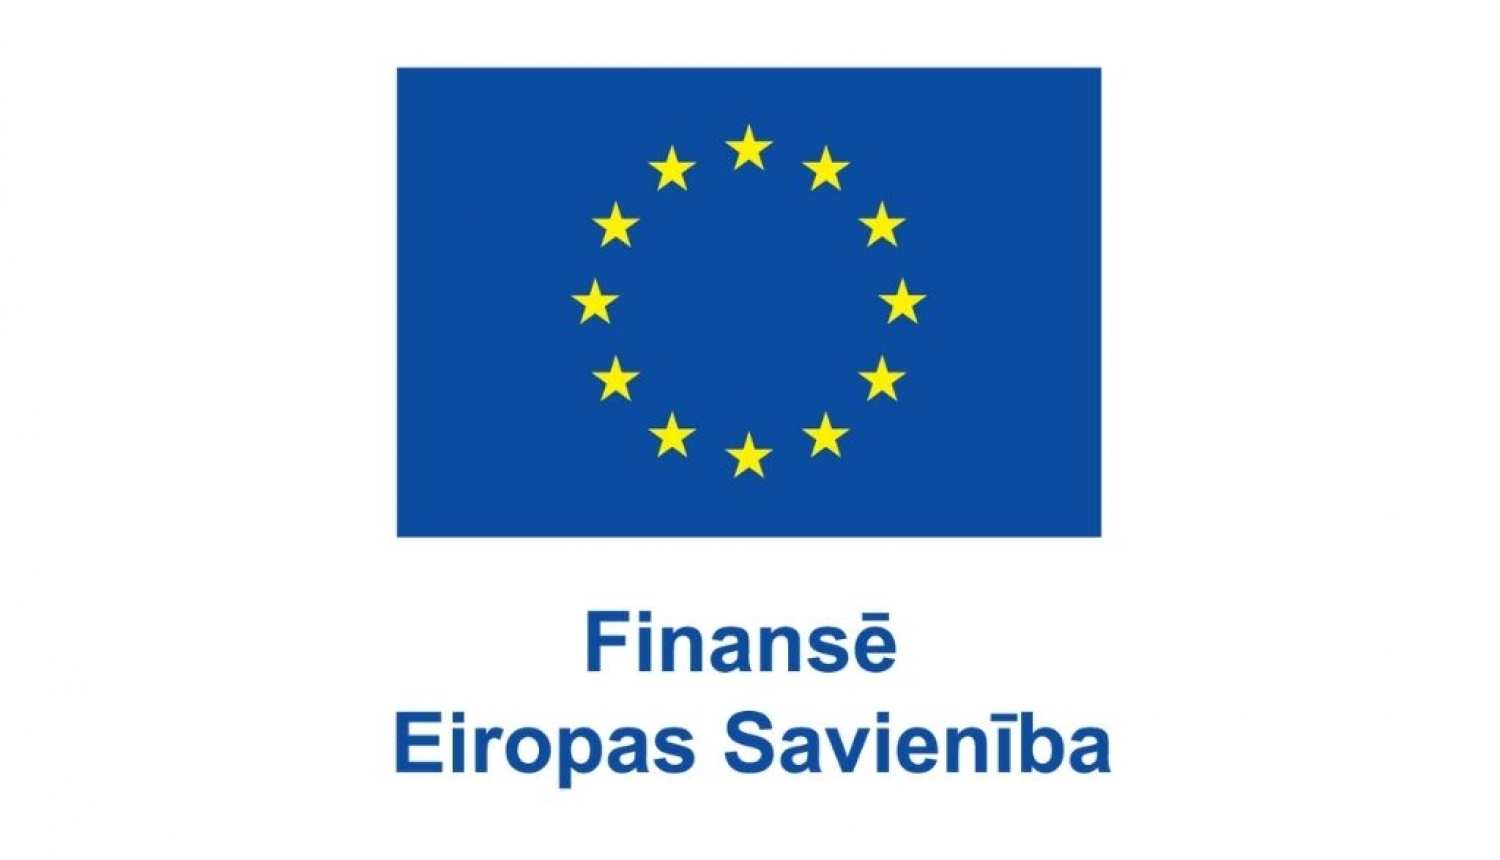 Eiropas Savienības zilais karogs, kam vidū apļa formā izvietotas divpadsmit dzeltenas zvaigznes. Zem karoga teksts: Finansē Eiropas Savienība